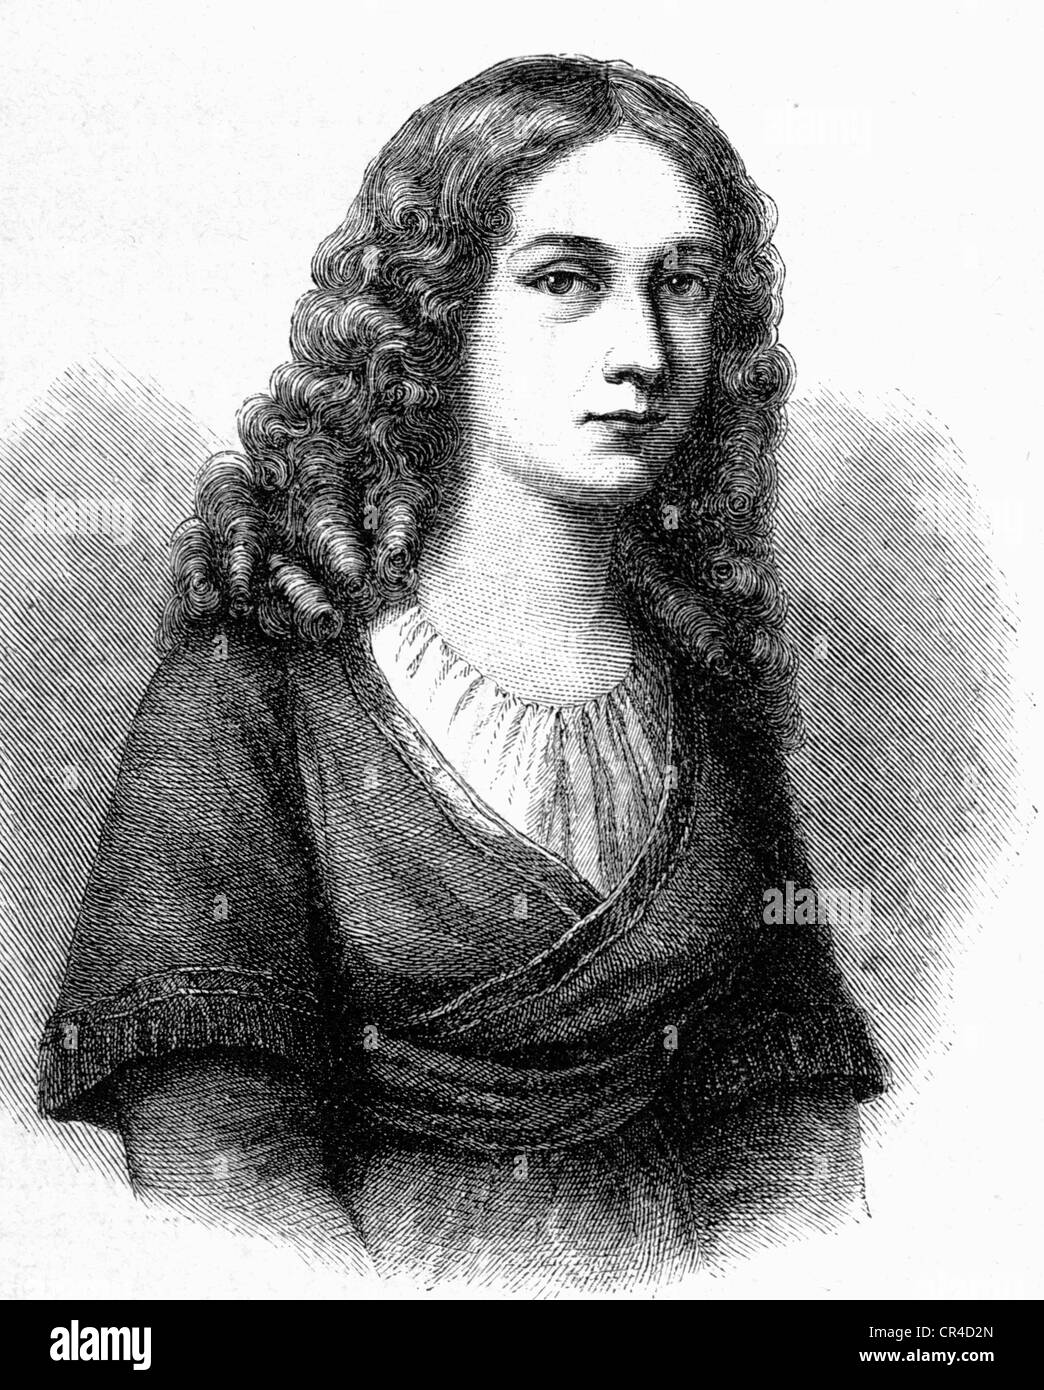 Charlotte Louise Antoinette von Schiller (1766-1826), épouse de Fr. Schiller, gravure sur acier avant 1880 Banque D'Images